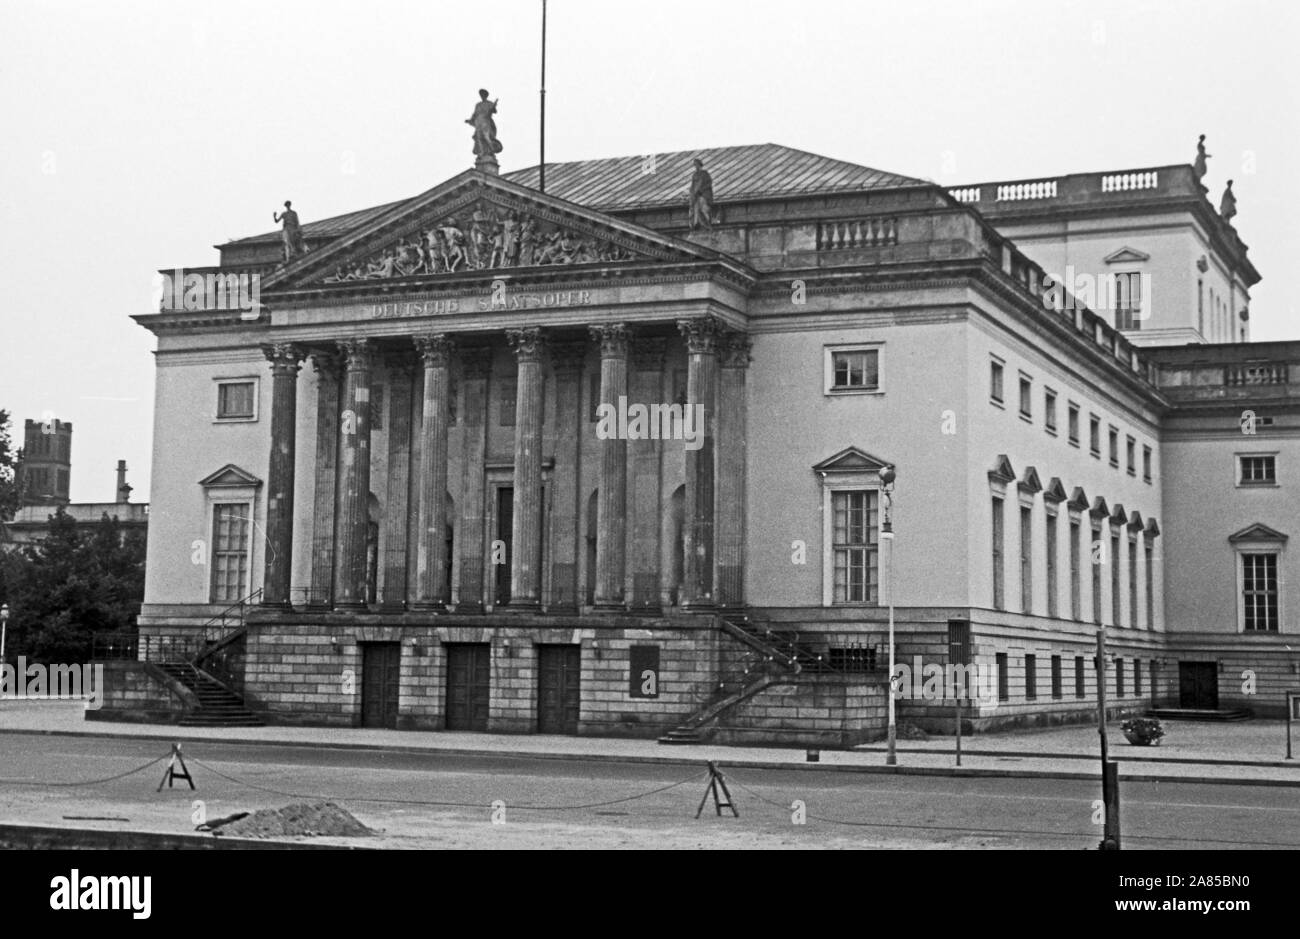 Die Deutsche Staatsoper Unter den Linden a Berlino, Deutschland 1961. Opera di Stato di Berlino al viale Unter den Linden, Germania 1961. Foto Stock